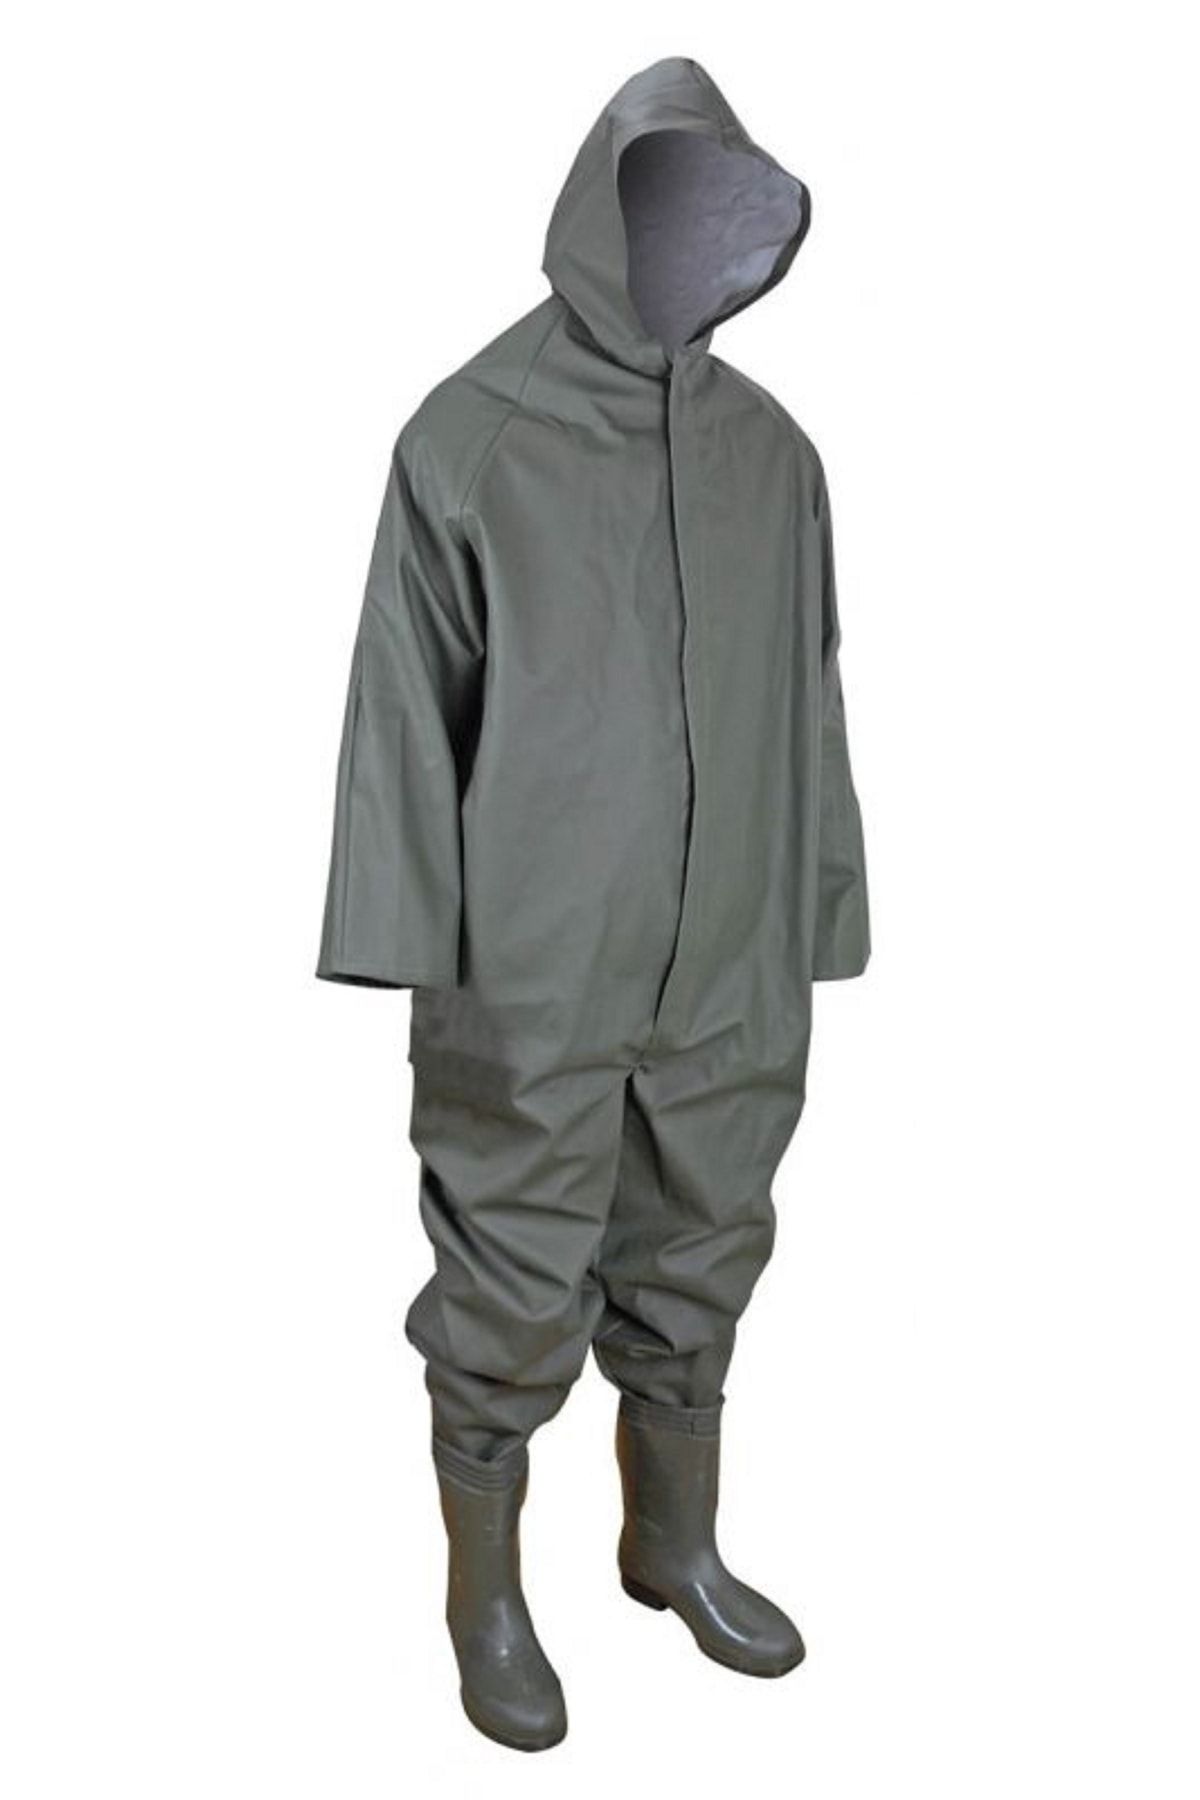 Anıl Yağmurluk Standart Çizmeli Boy Tulum ( Çizme Numarasına Göre Almanızı Öneriririz )